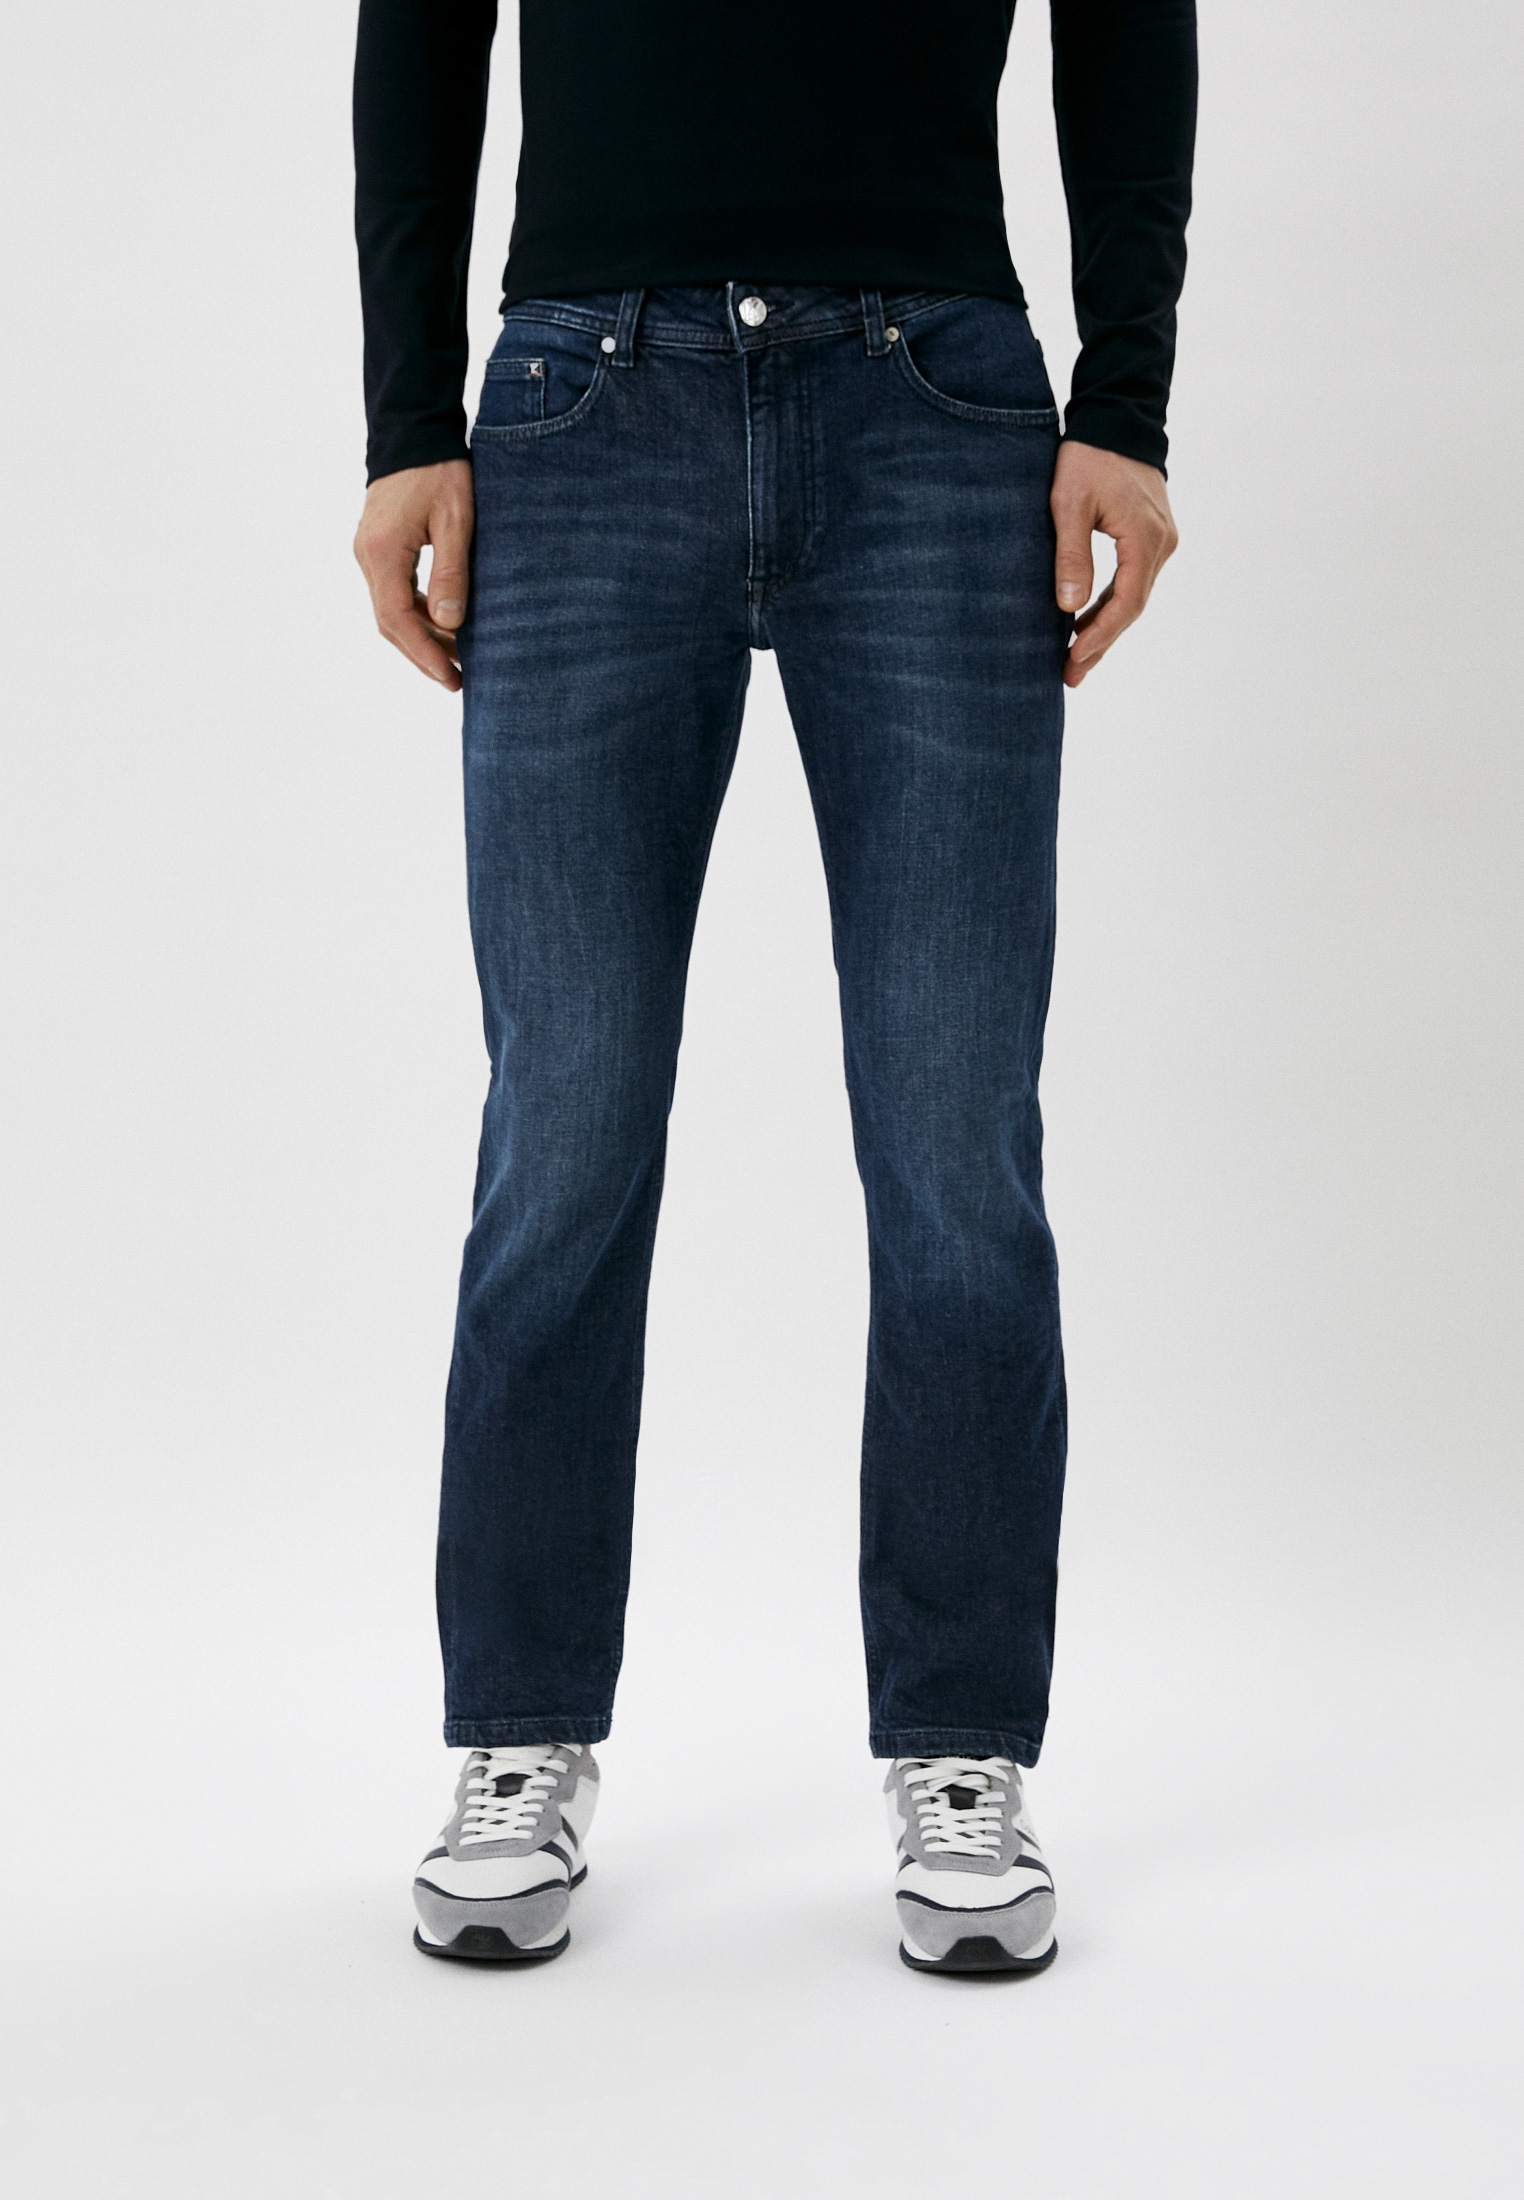 Мужские зауженные джинсы Karl Lagerfeld (Карл Лагерфельд) 265840-500899: изображение 1